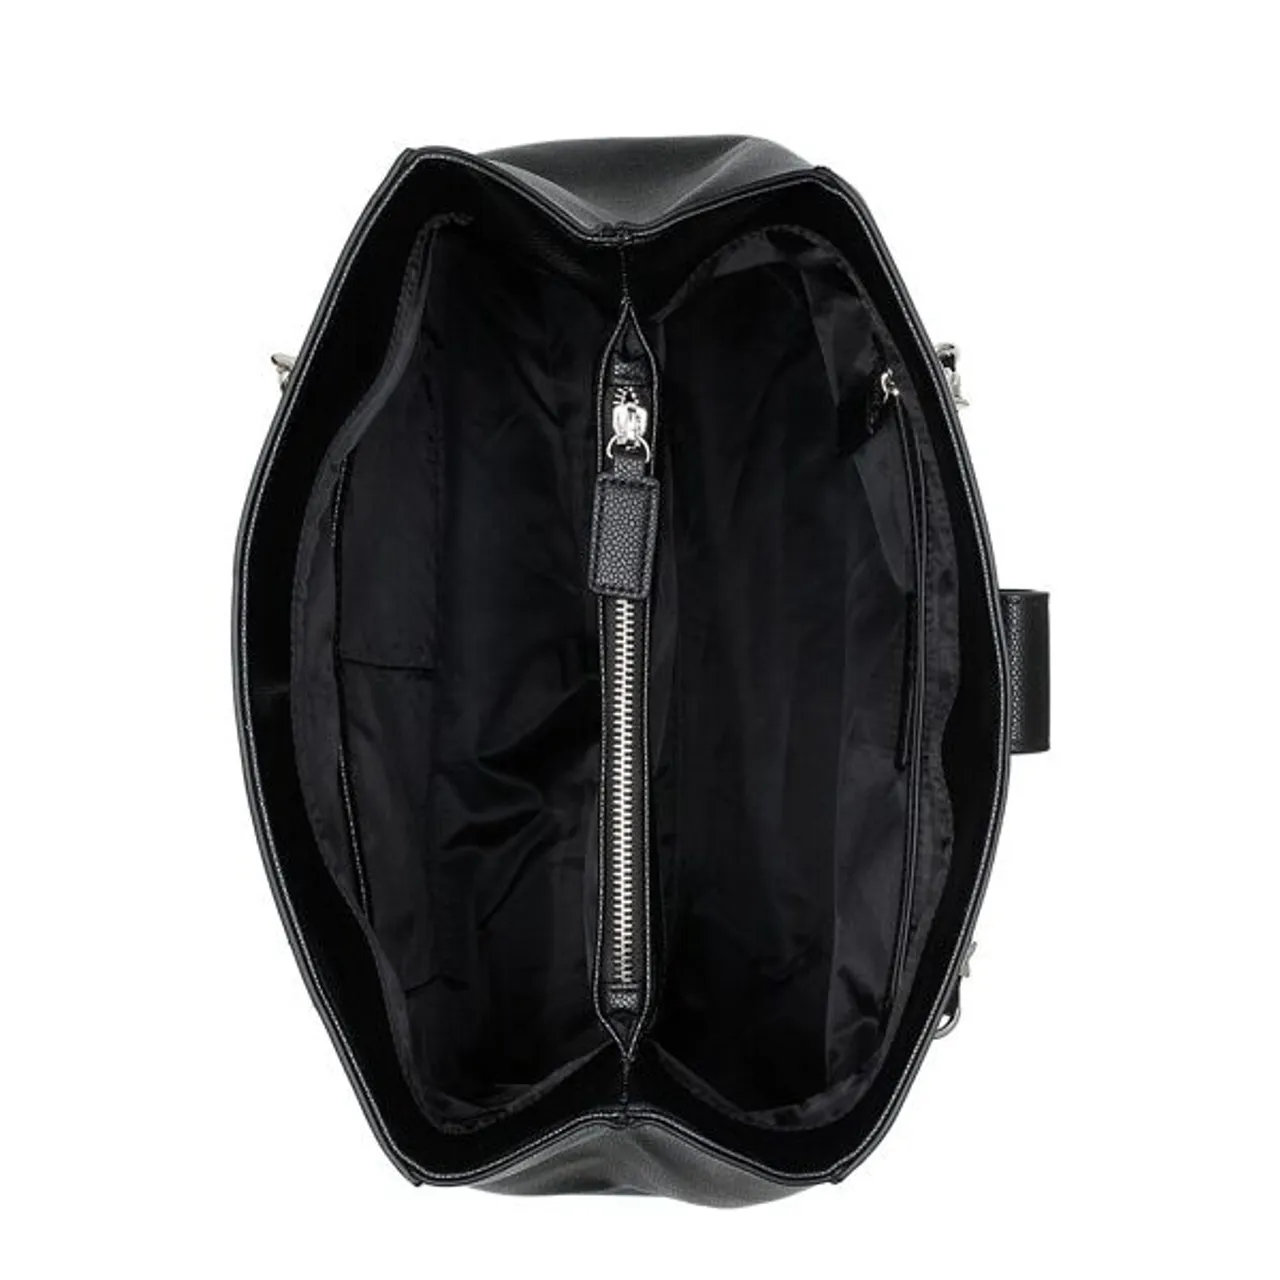 Shopper VALENTINO BAGS "DIVINA" Gr. B/H/T: 36 cm x 29 cm x 12 cm, schwarz Damen Taschen Handtaschen